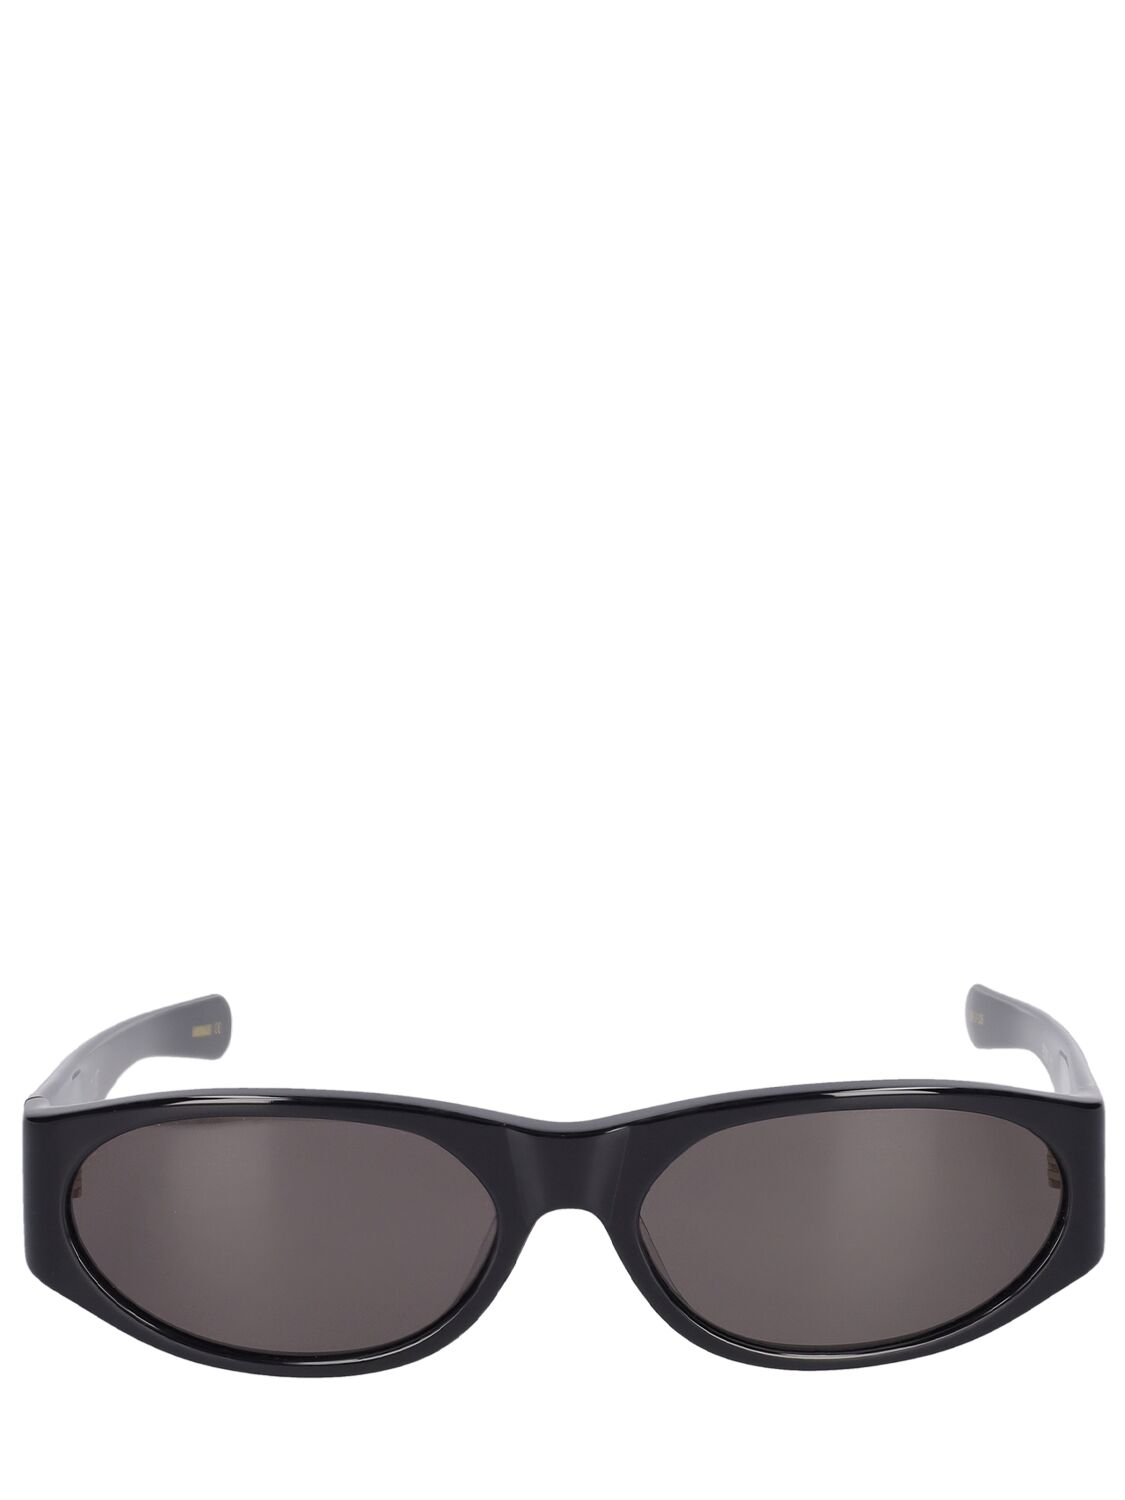 Flatlist Eyewear Eddie Kyu Sunglasses In Black